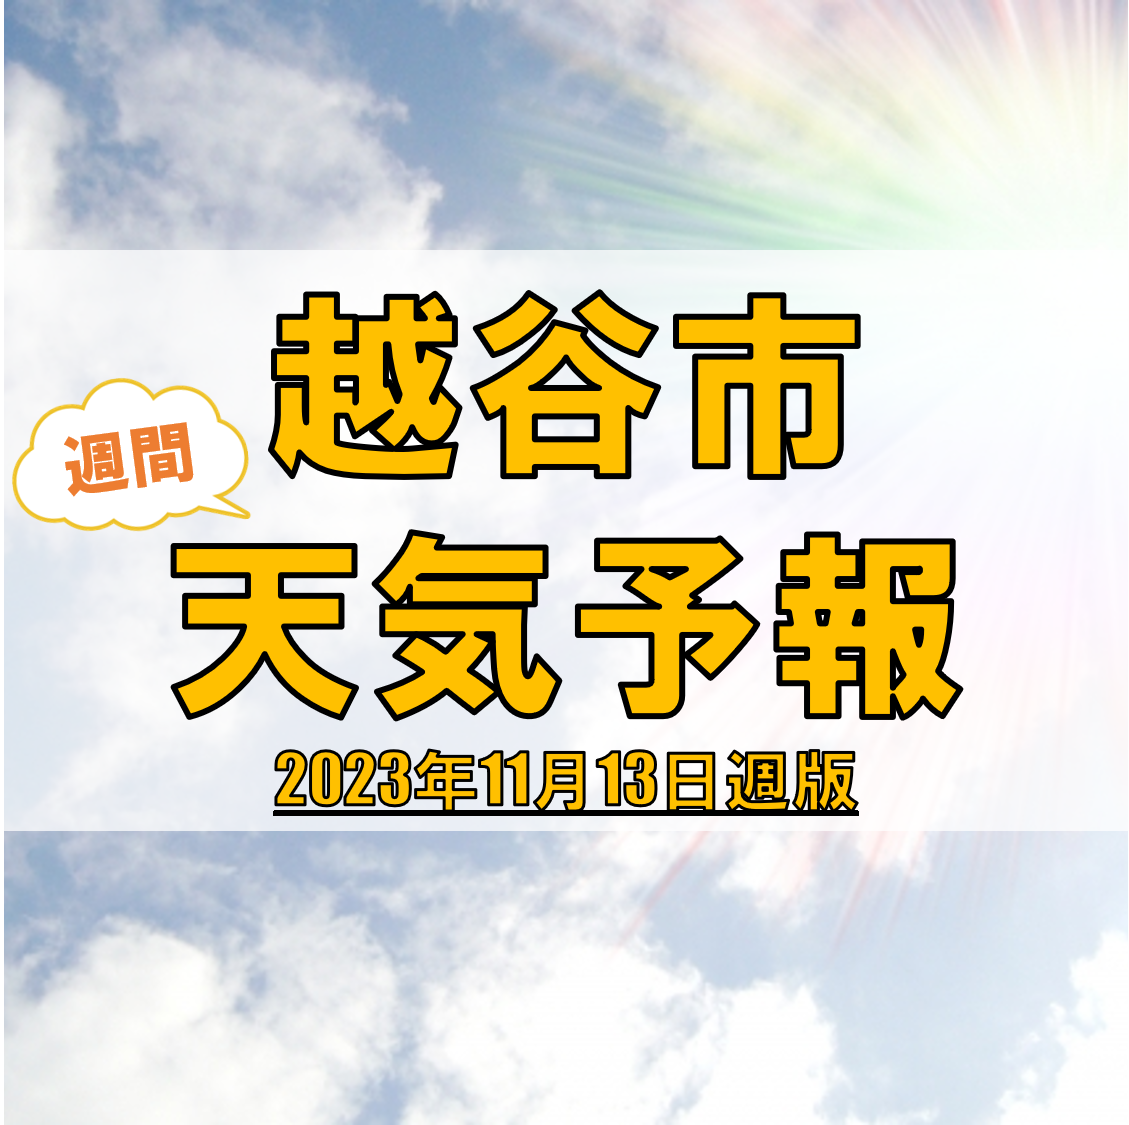 越谷市の天気 週間予報【2023年11月13日週】